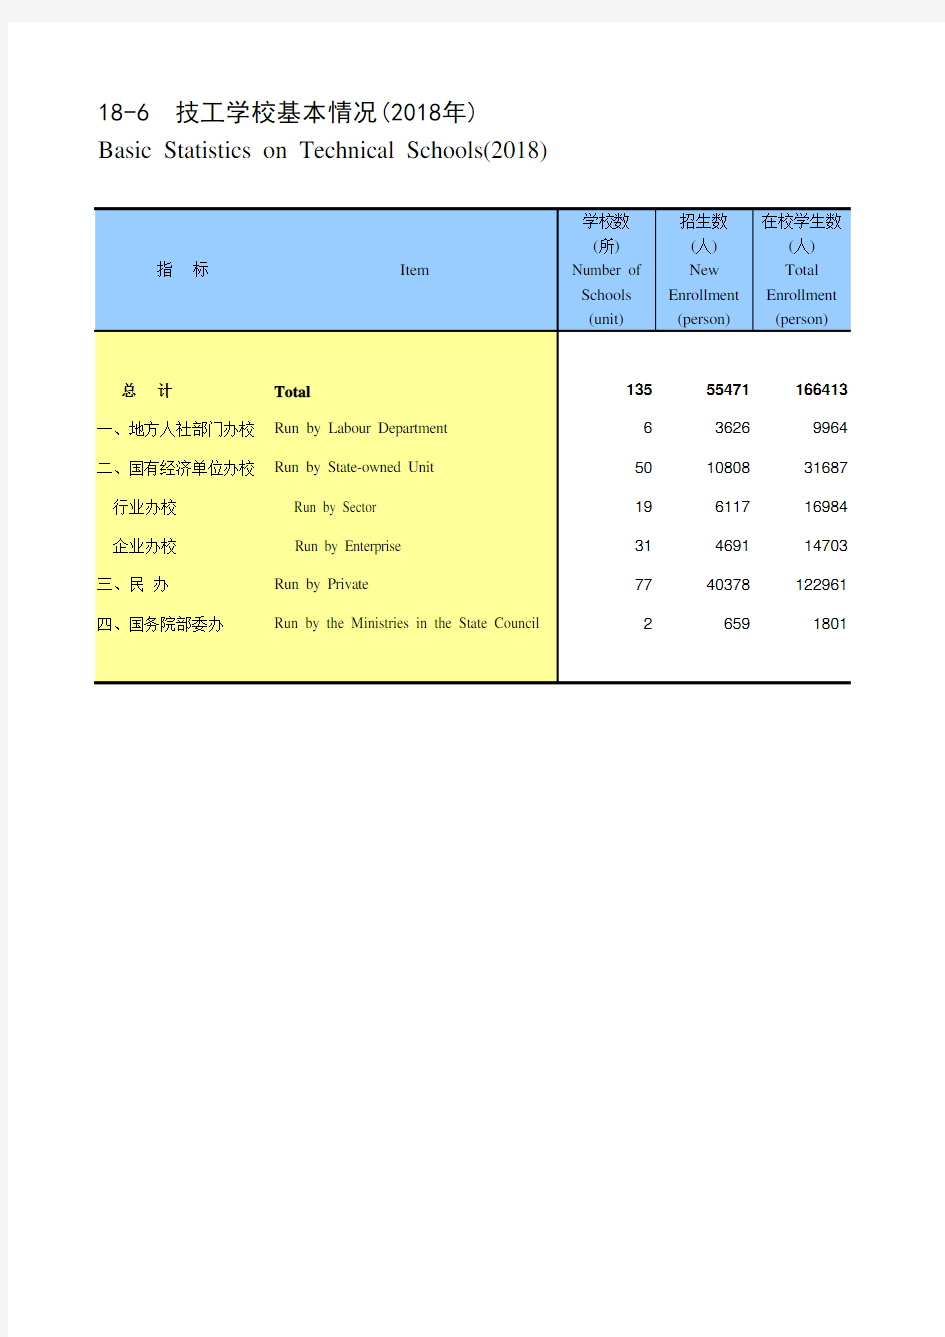 陕西省社会经济发展统计年鉴指标数据：18-6 技工学校基本情况(2018年)